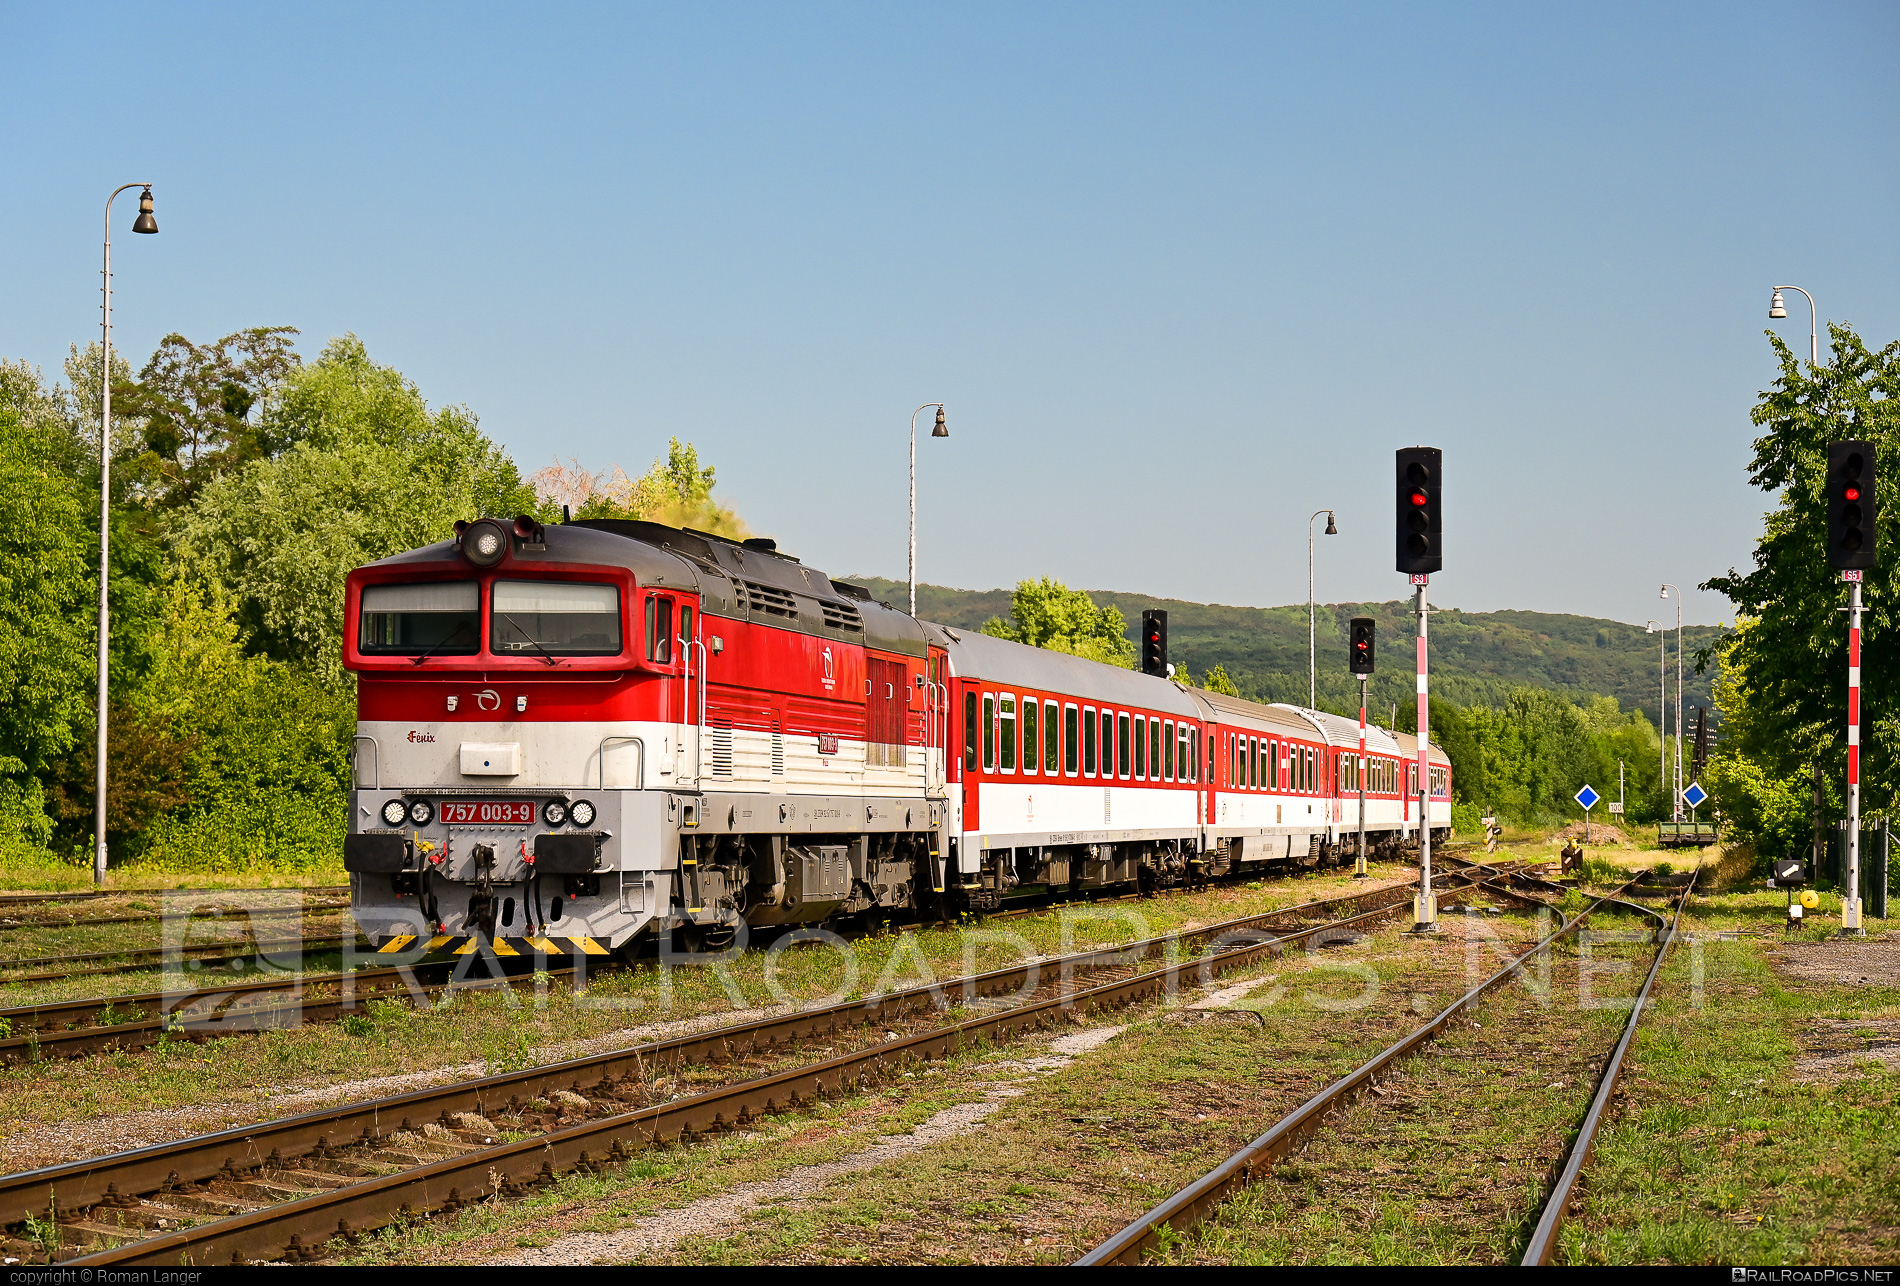 ŽOS Zvolen Class 757 - 757 003-9 operated by Železničná Spoločnost' Slovensko, a.s. #ZeleznicnaSpolocnostSlovensko #brejlovec #locomotiveclass757 #okuliarnik #zoszvolen #zssk